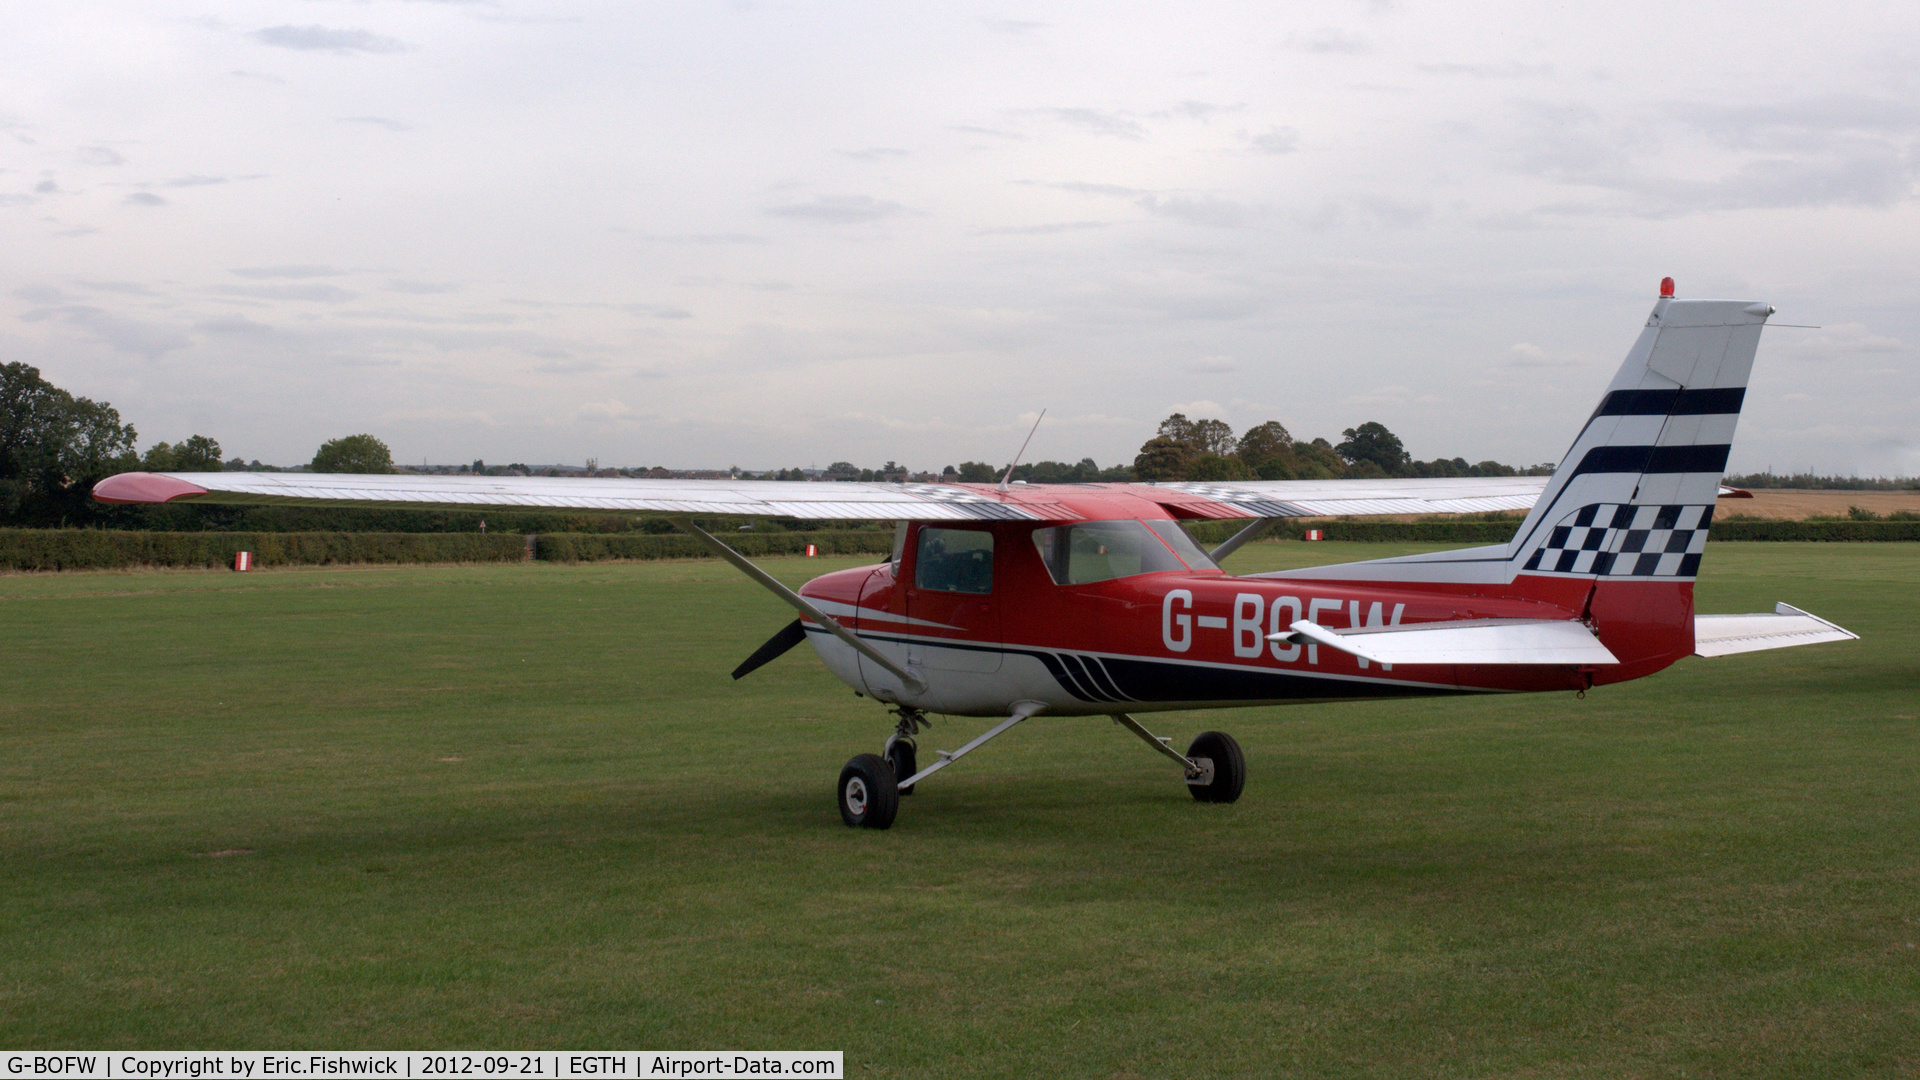 G-BOFW, 1975 Cessna A150M Aerobat C/N A150-0612, 1. G-BOFW at Shuttleworth (Old Warden) Aerodrome.